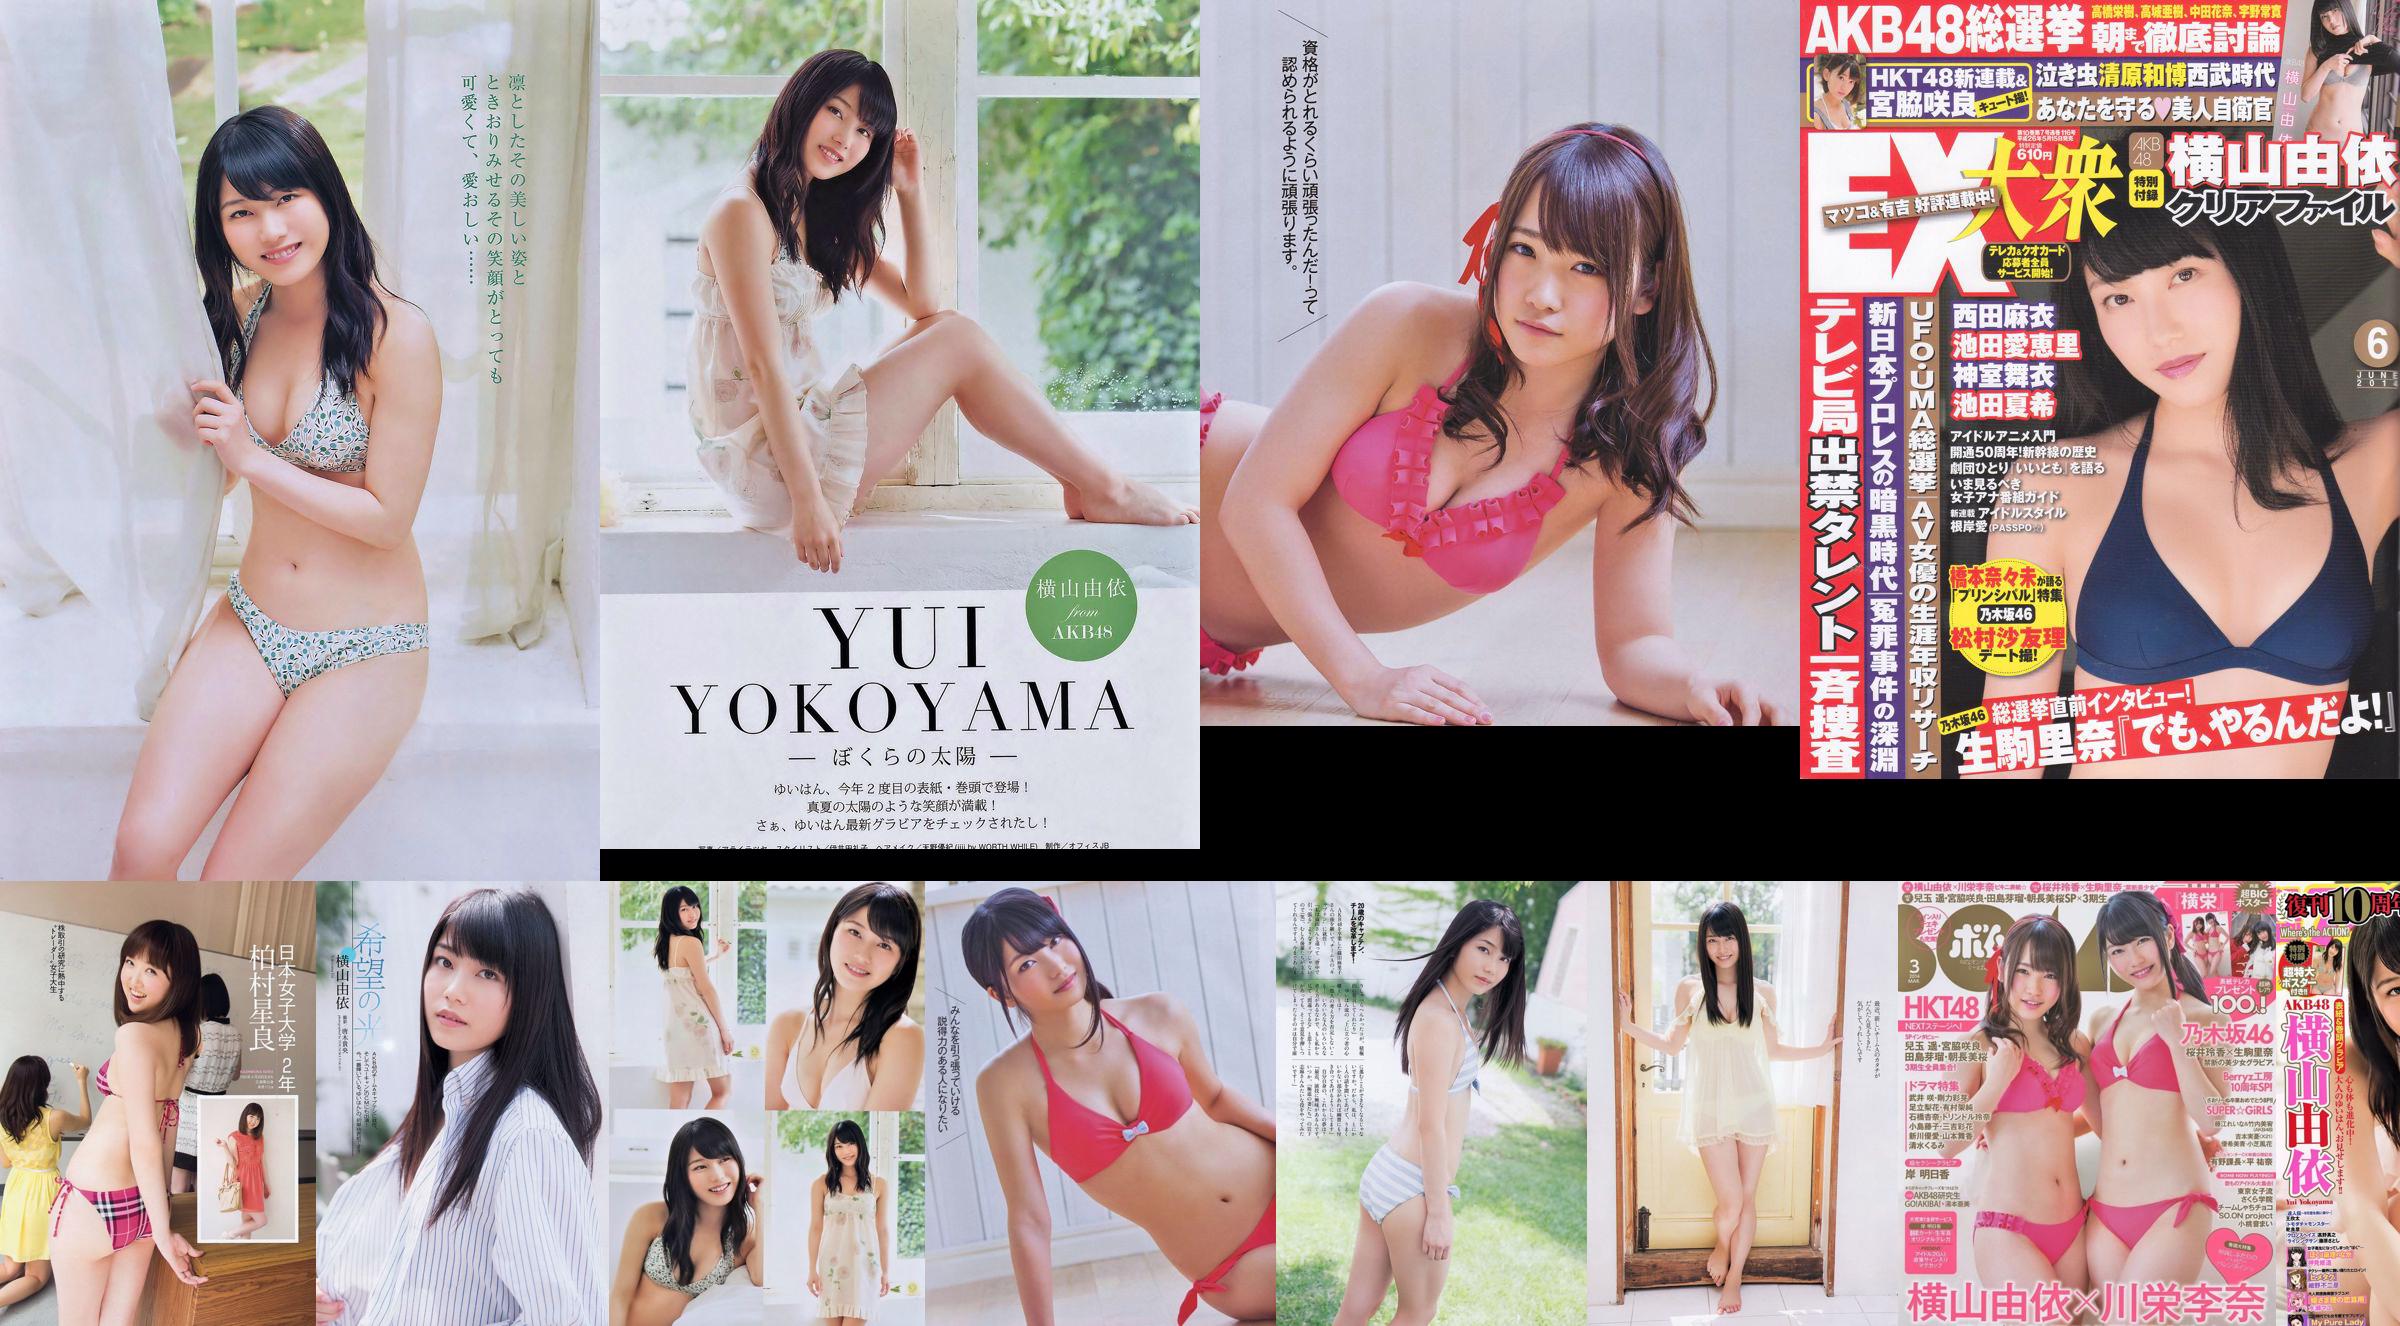 [Bomb Magazine] 2014 No.03 Fotografia di Yui Yokoyama Rina Kawaei No.457b88 Pagina 1